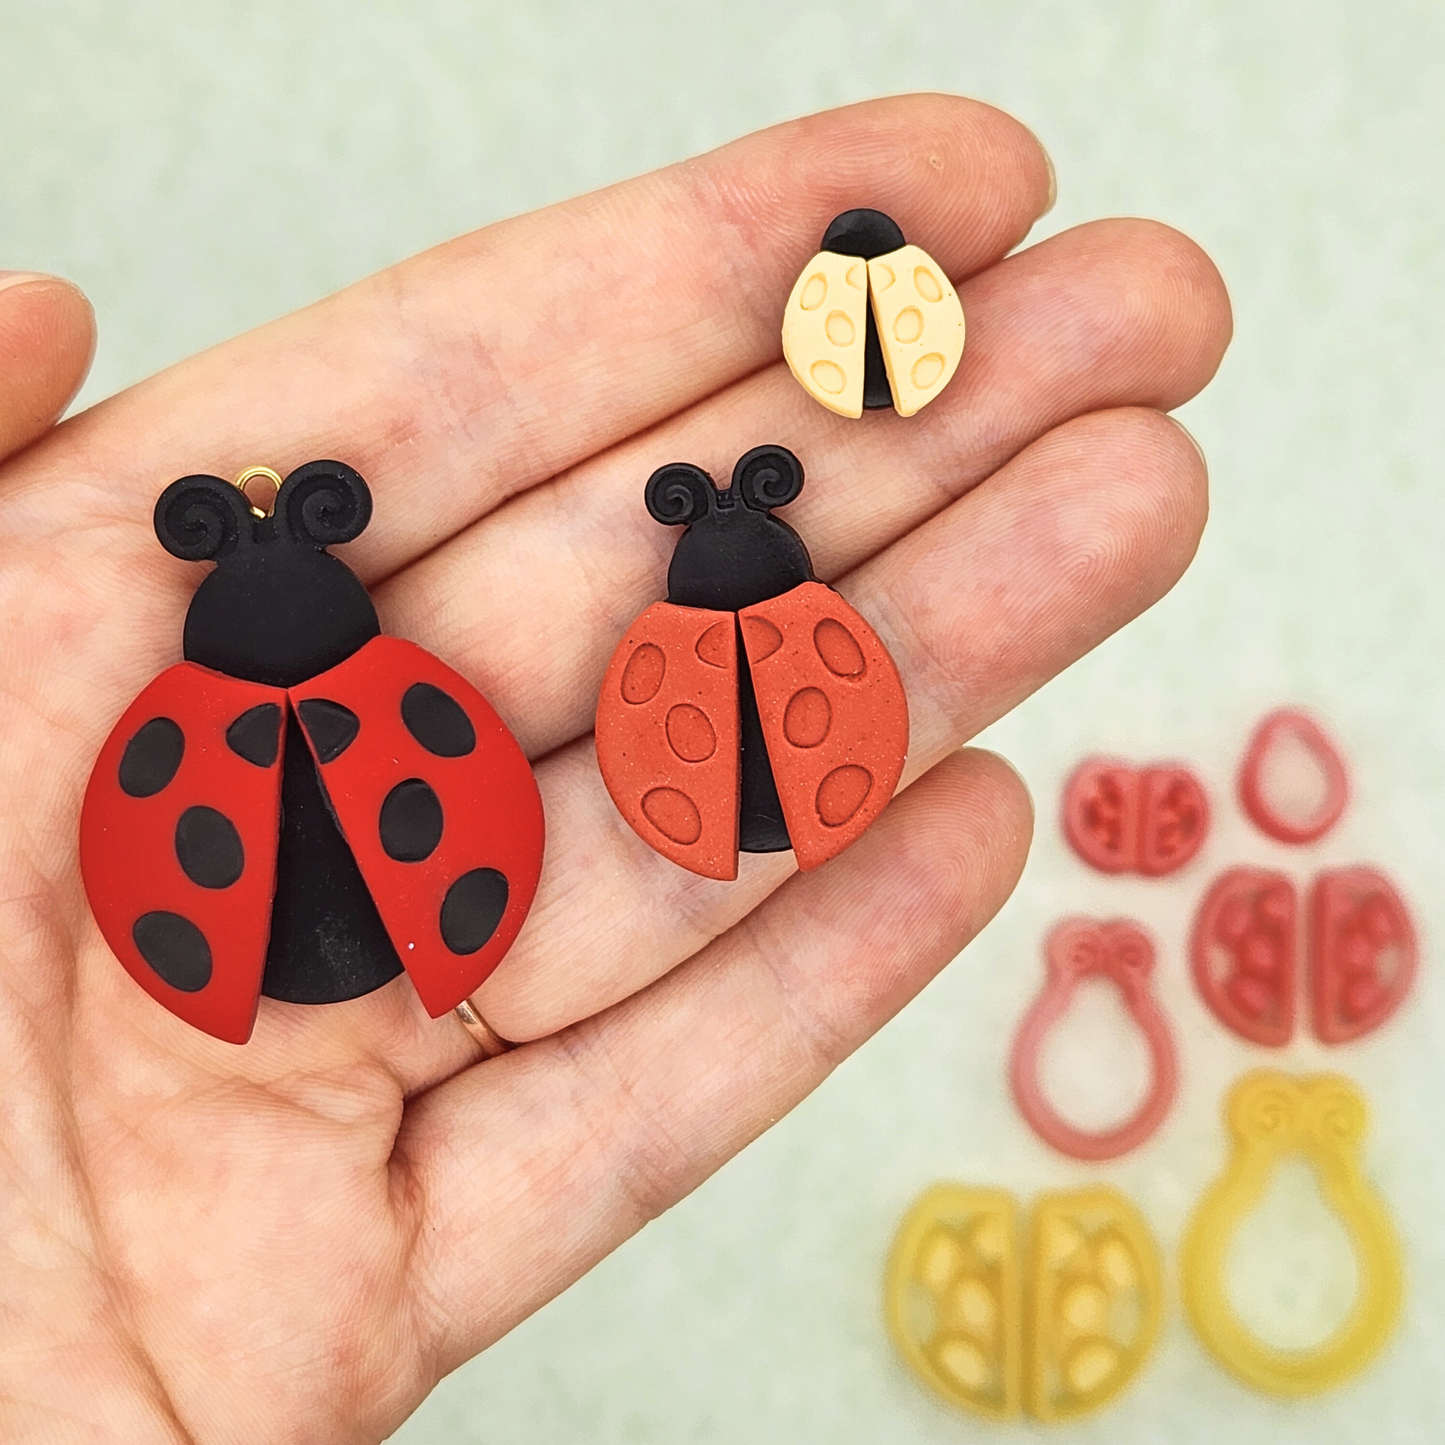 Ladybug Polymer Clay Cutter Set